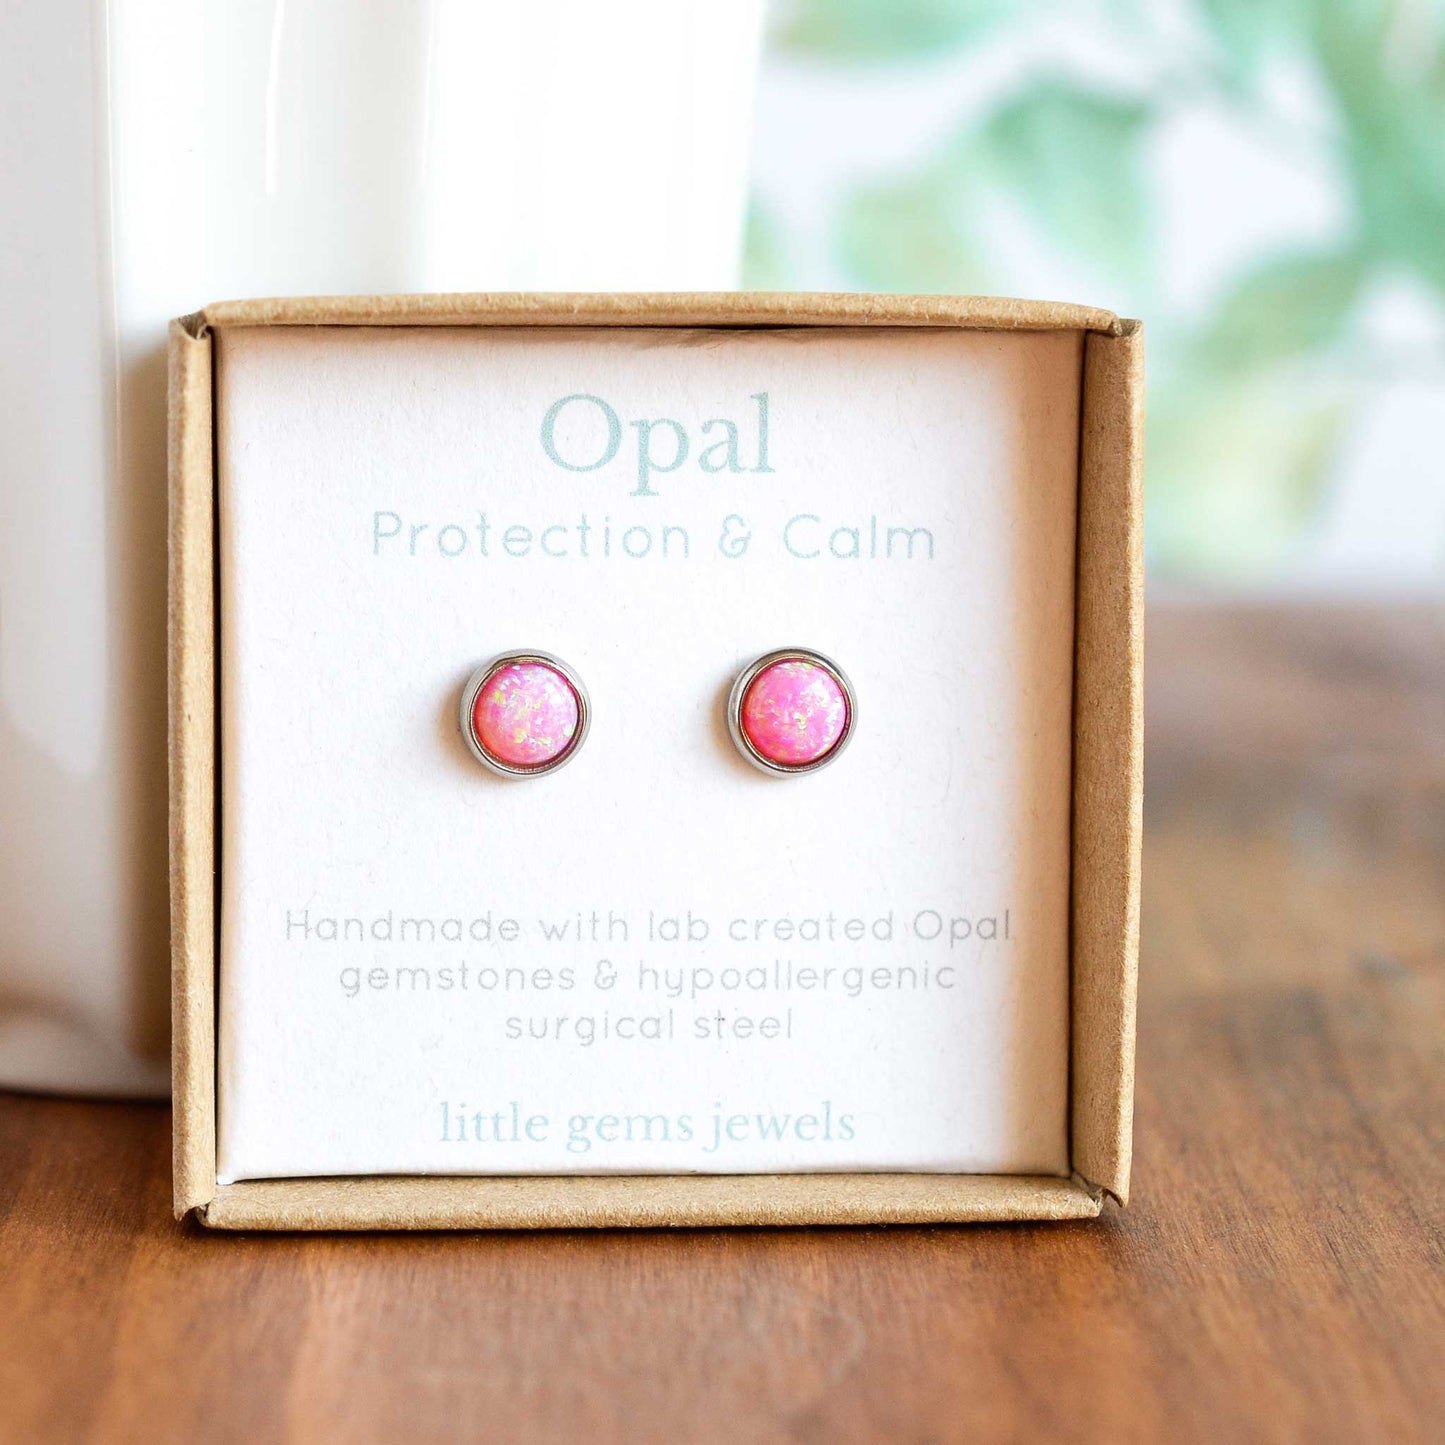 Pink Opal stud earrings in eco friendly gift box